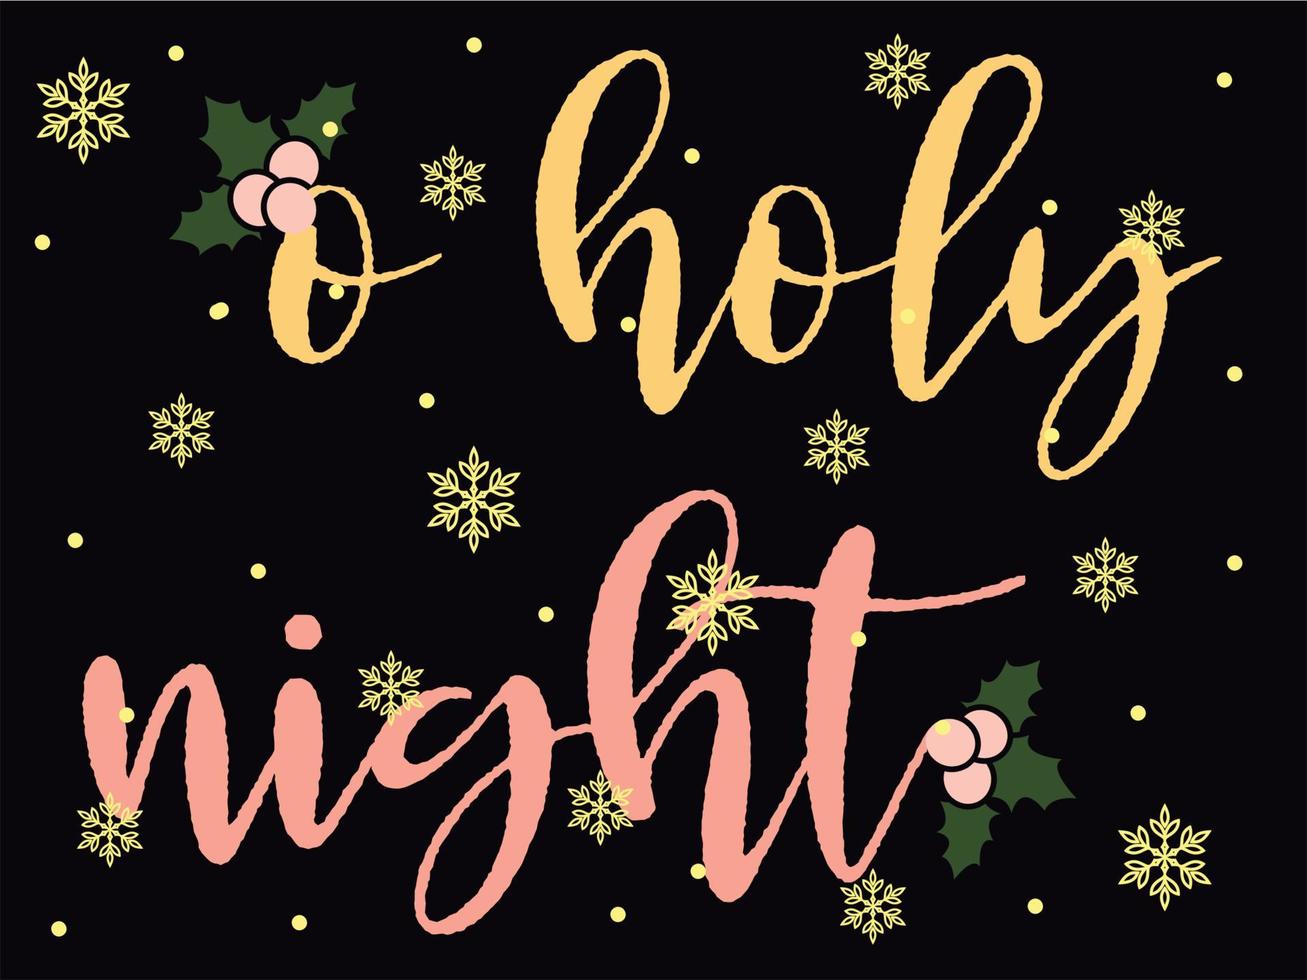 O heilig nacht 05 vrolijk Kerstmis en gelukkig vakantie typografie reeks vector